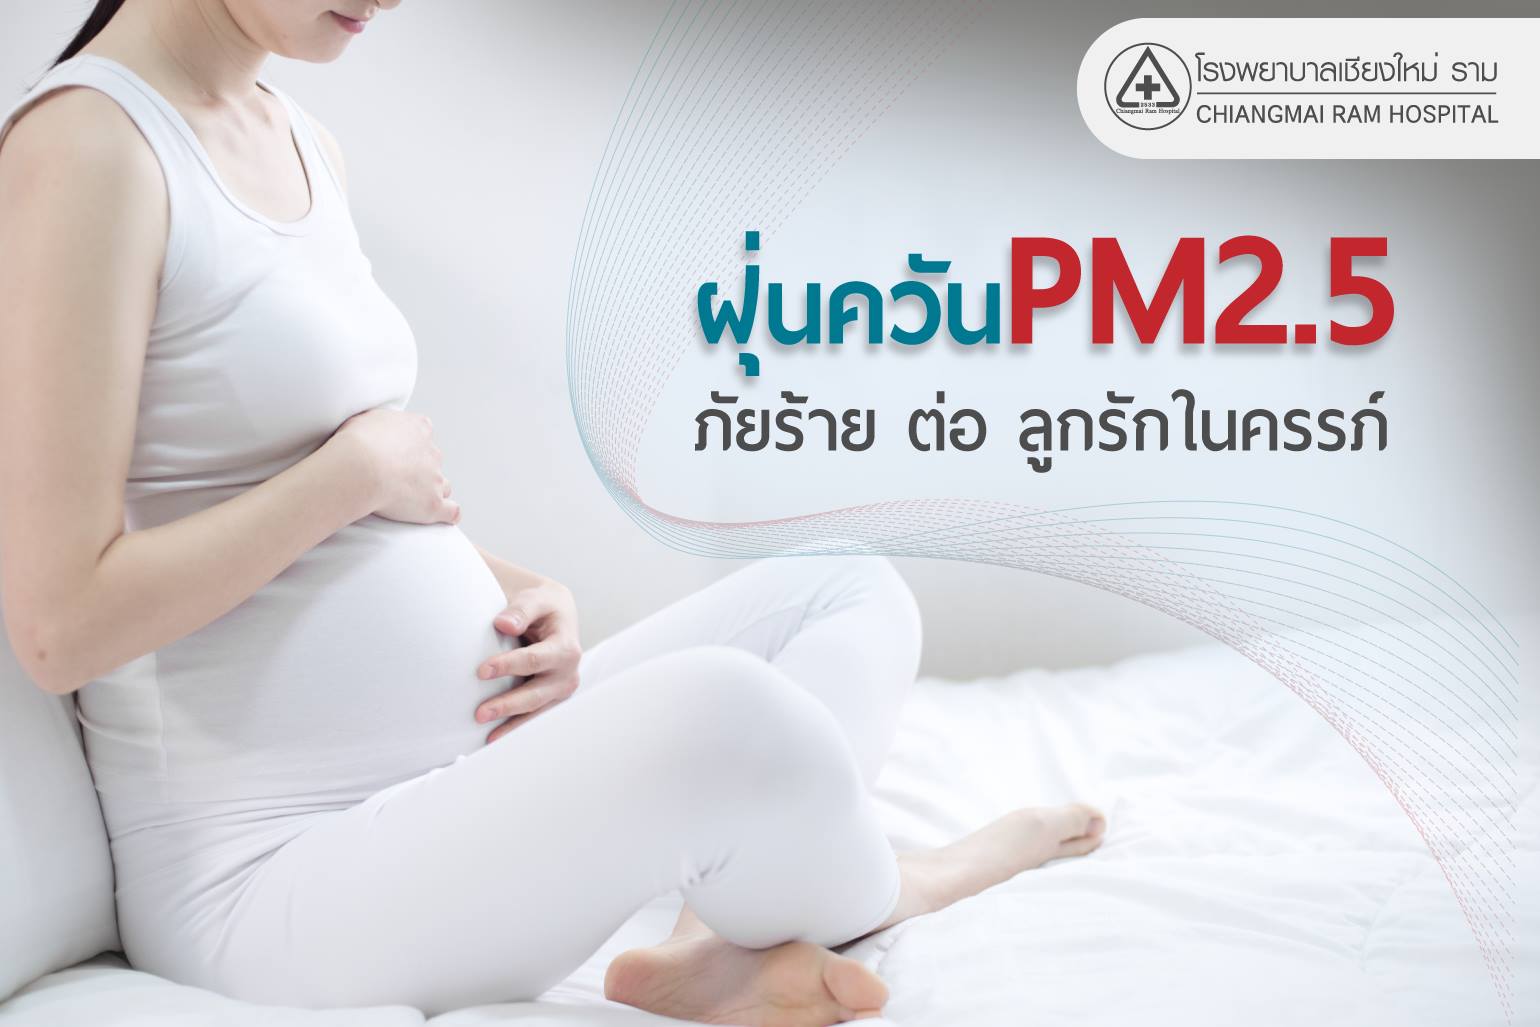 " ฝุ่นควันPM2.5 ภัยร้าย ต่อ ลูกรักในครรภ์ "